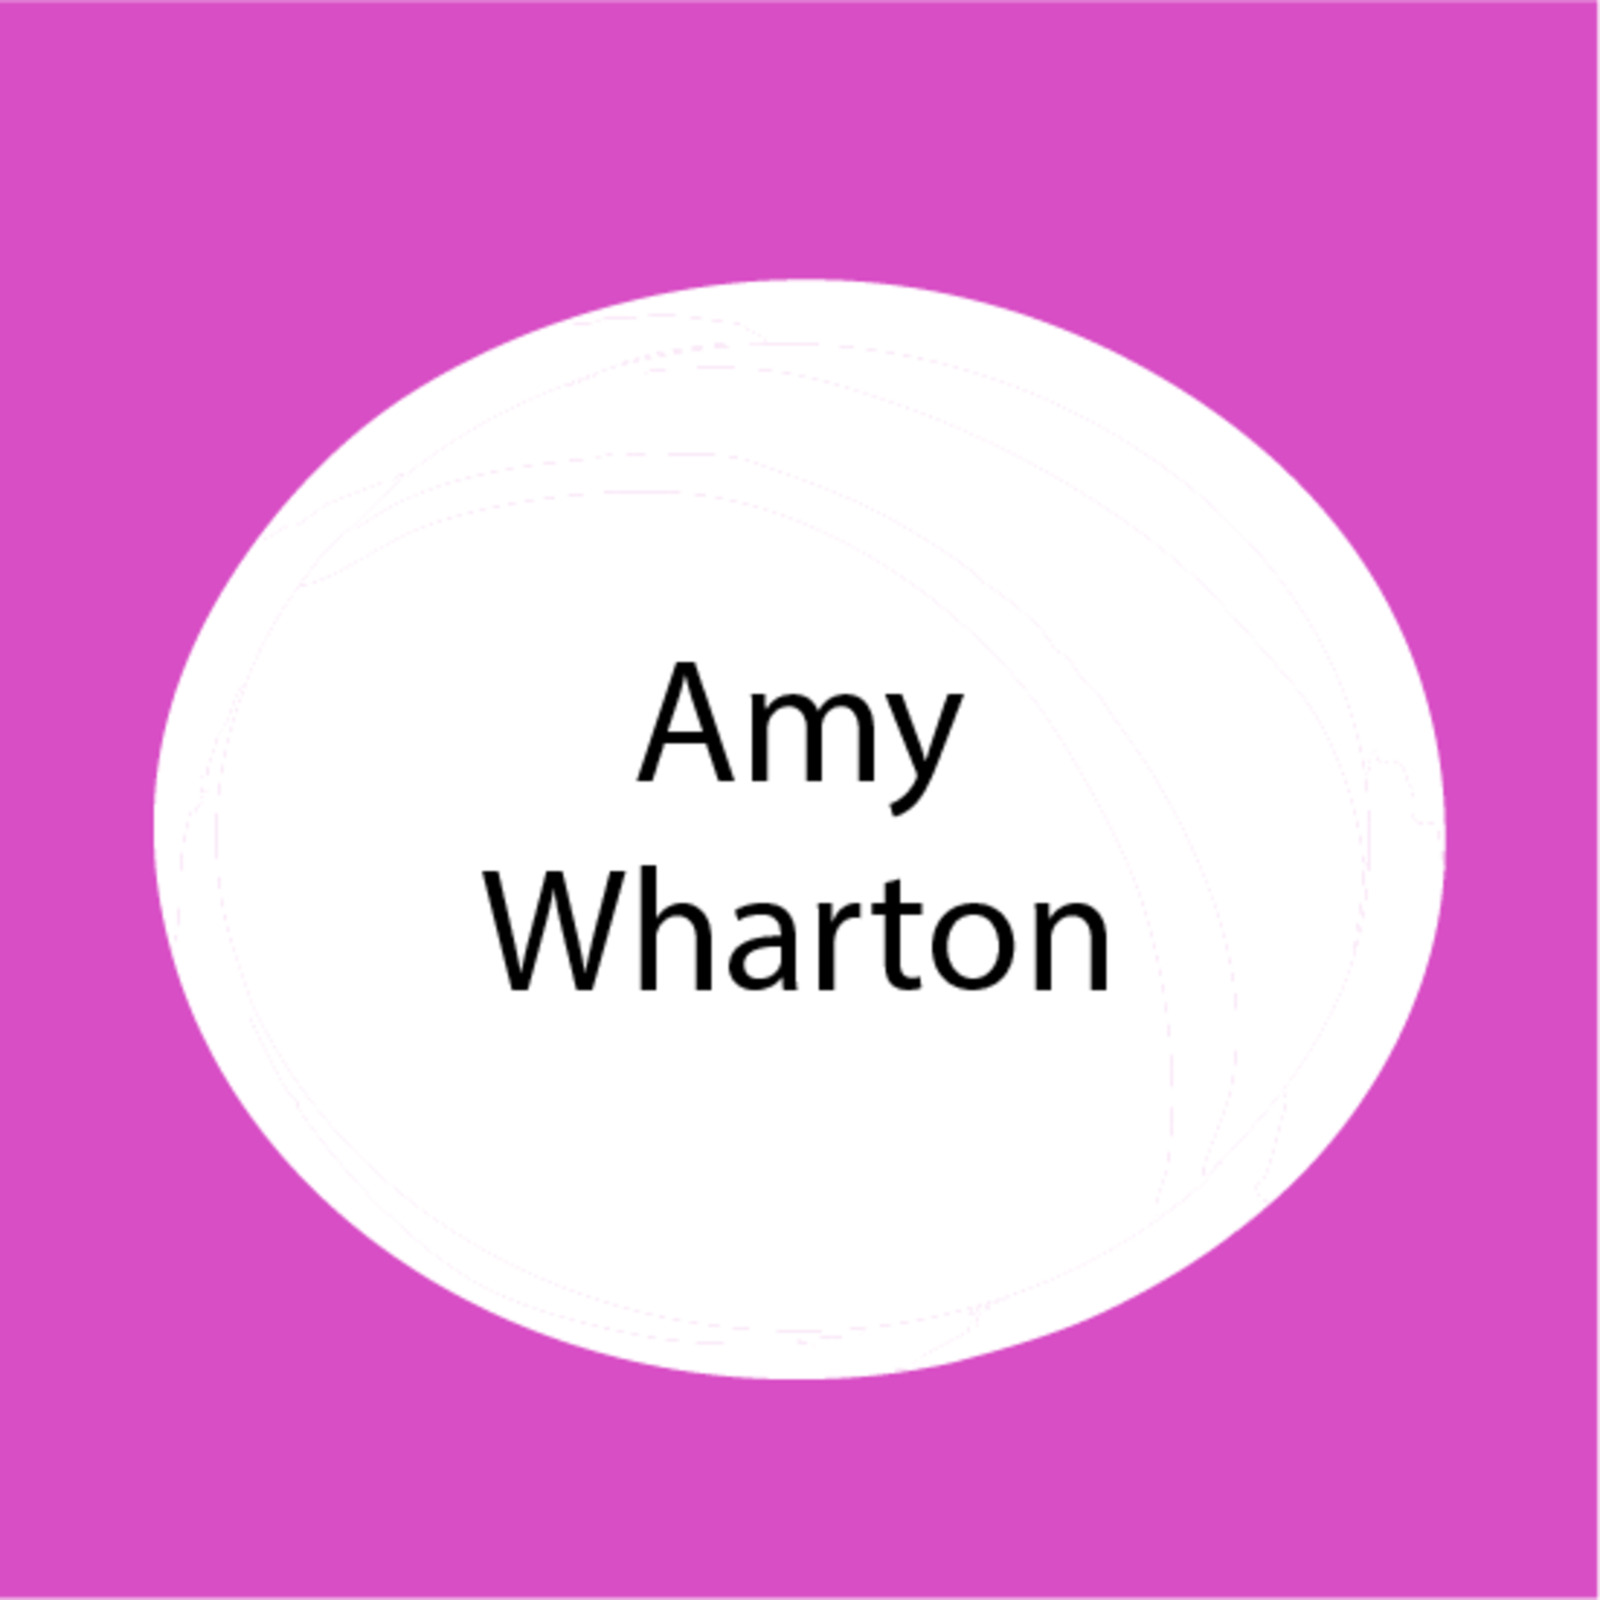 Amy Wharton